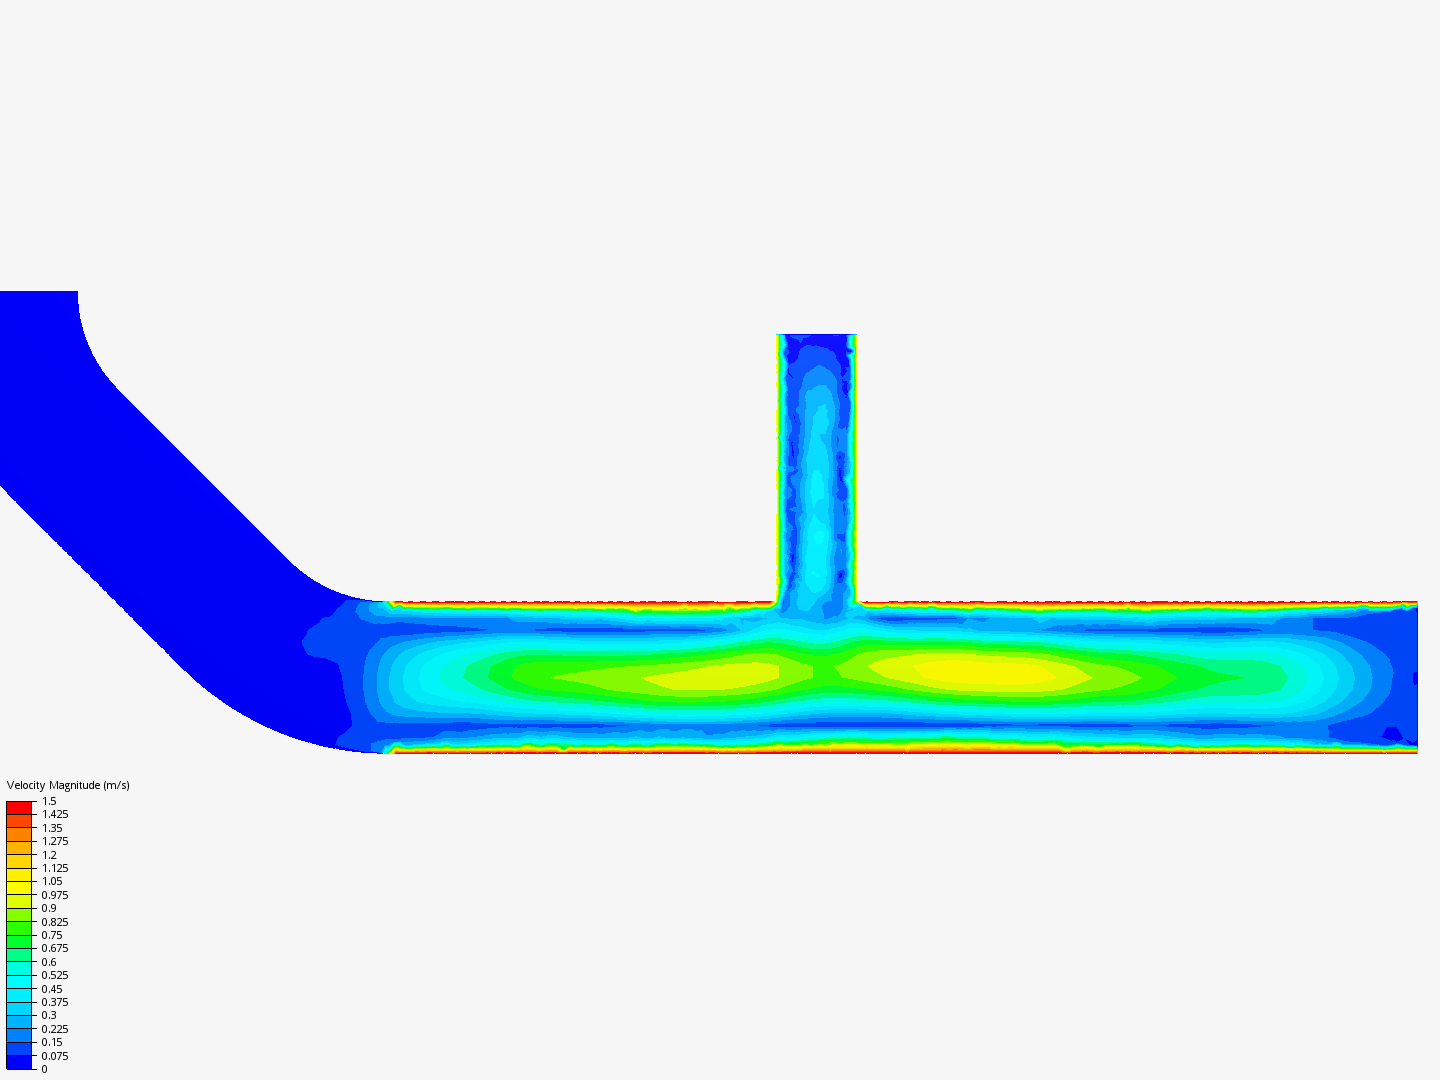 Tutorial 2: Pipe junction flow image